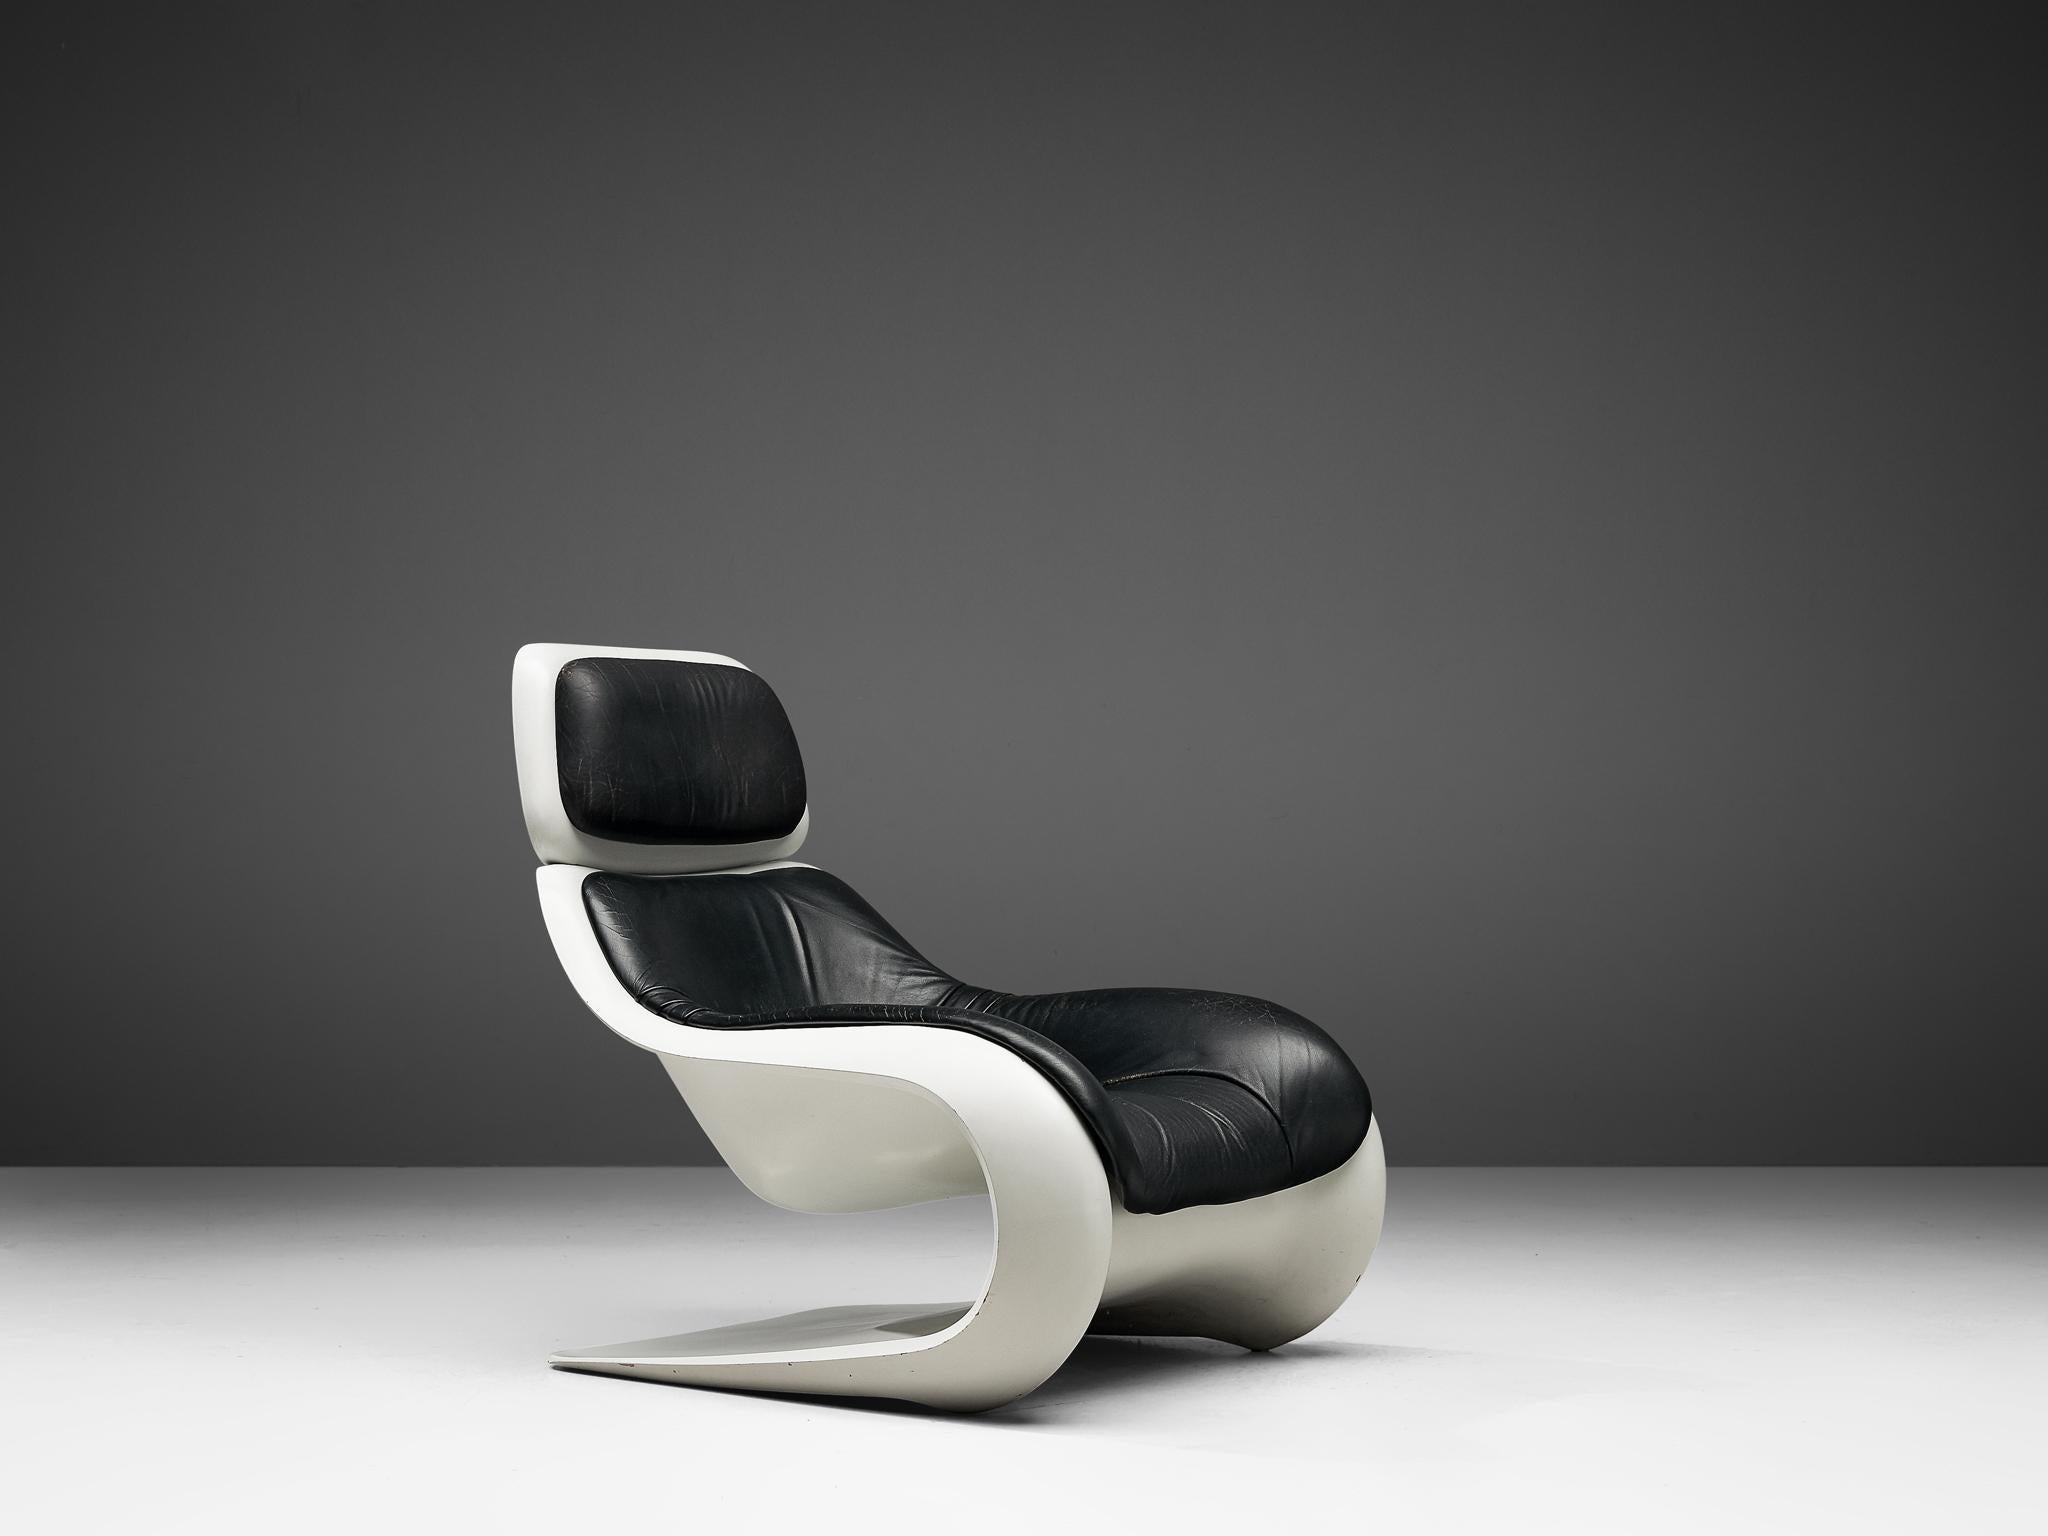 Klaus Uredat pour Collection S, chaise longue modèle 'Targa', polyuréthane moulé et cuir,  Allemagne, vers 1971.
 
Fauteuil sculptural du designer allemand Klaus Uredat. Le cadre de forme organique est fabriqué en polyuréthane moulé et présente des